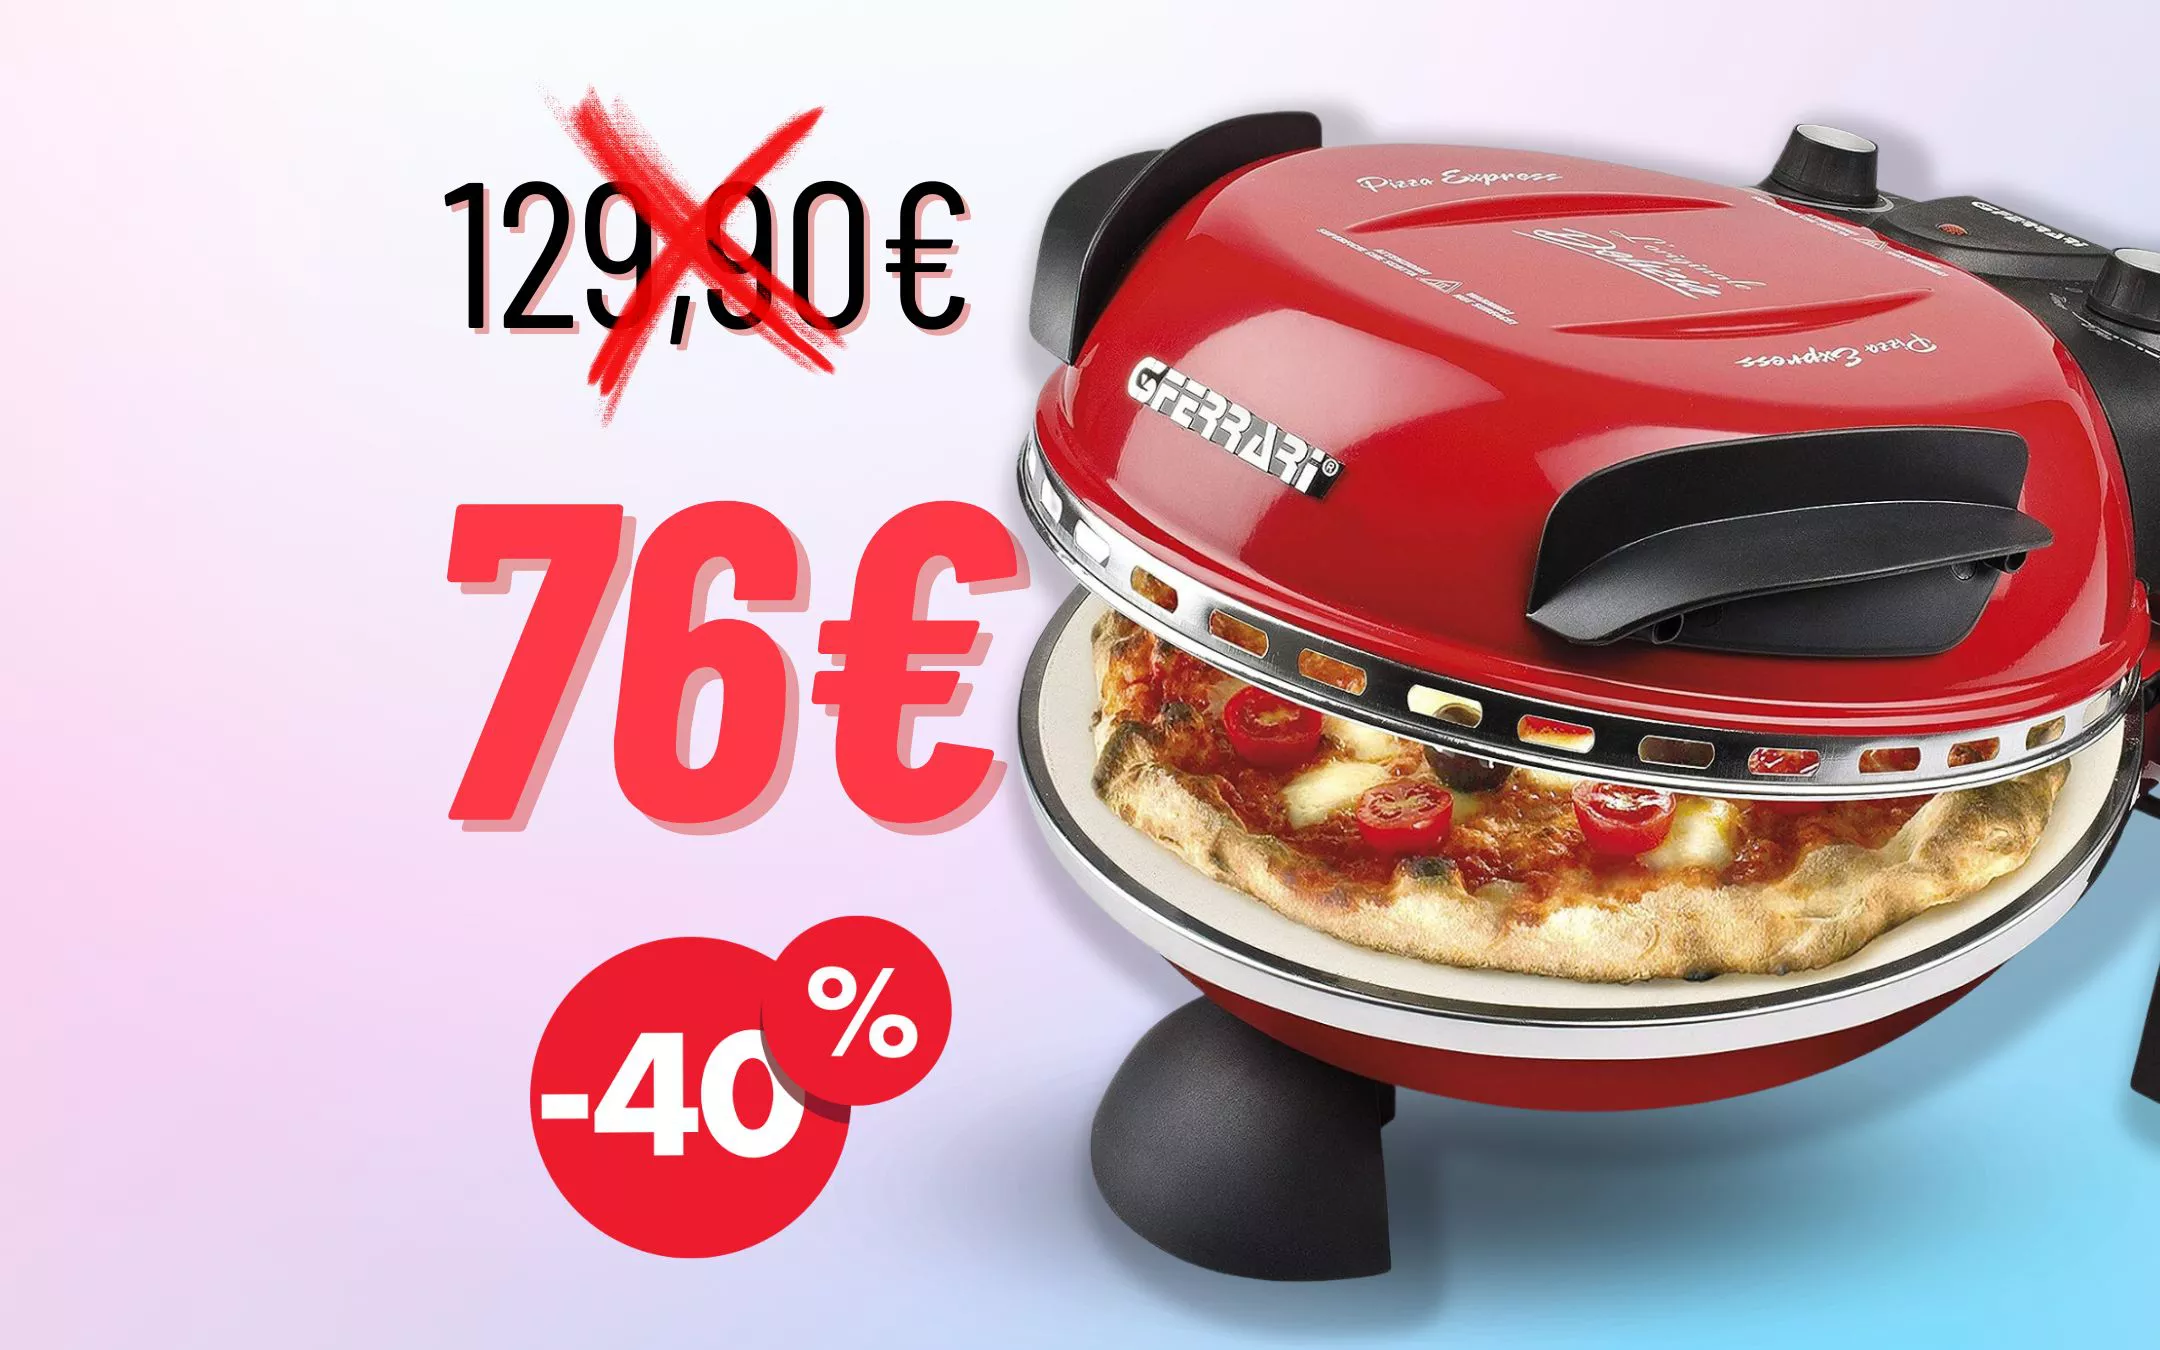 G3 Ferrari G10006 Pizza Express Delizia, Forno Pizza, 1200 W, 400°C, Pizza  fragrante in 5 minuti, Ricettario incluso, Arancio : : Casa e  cucina